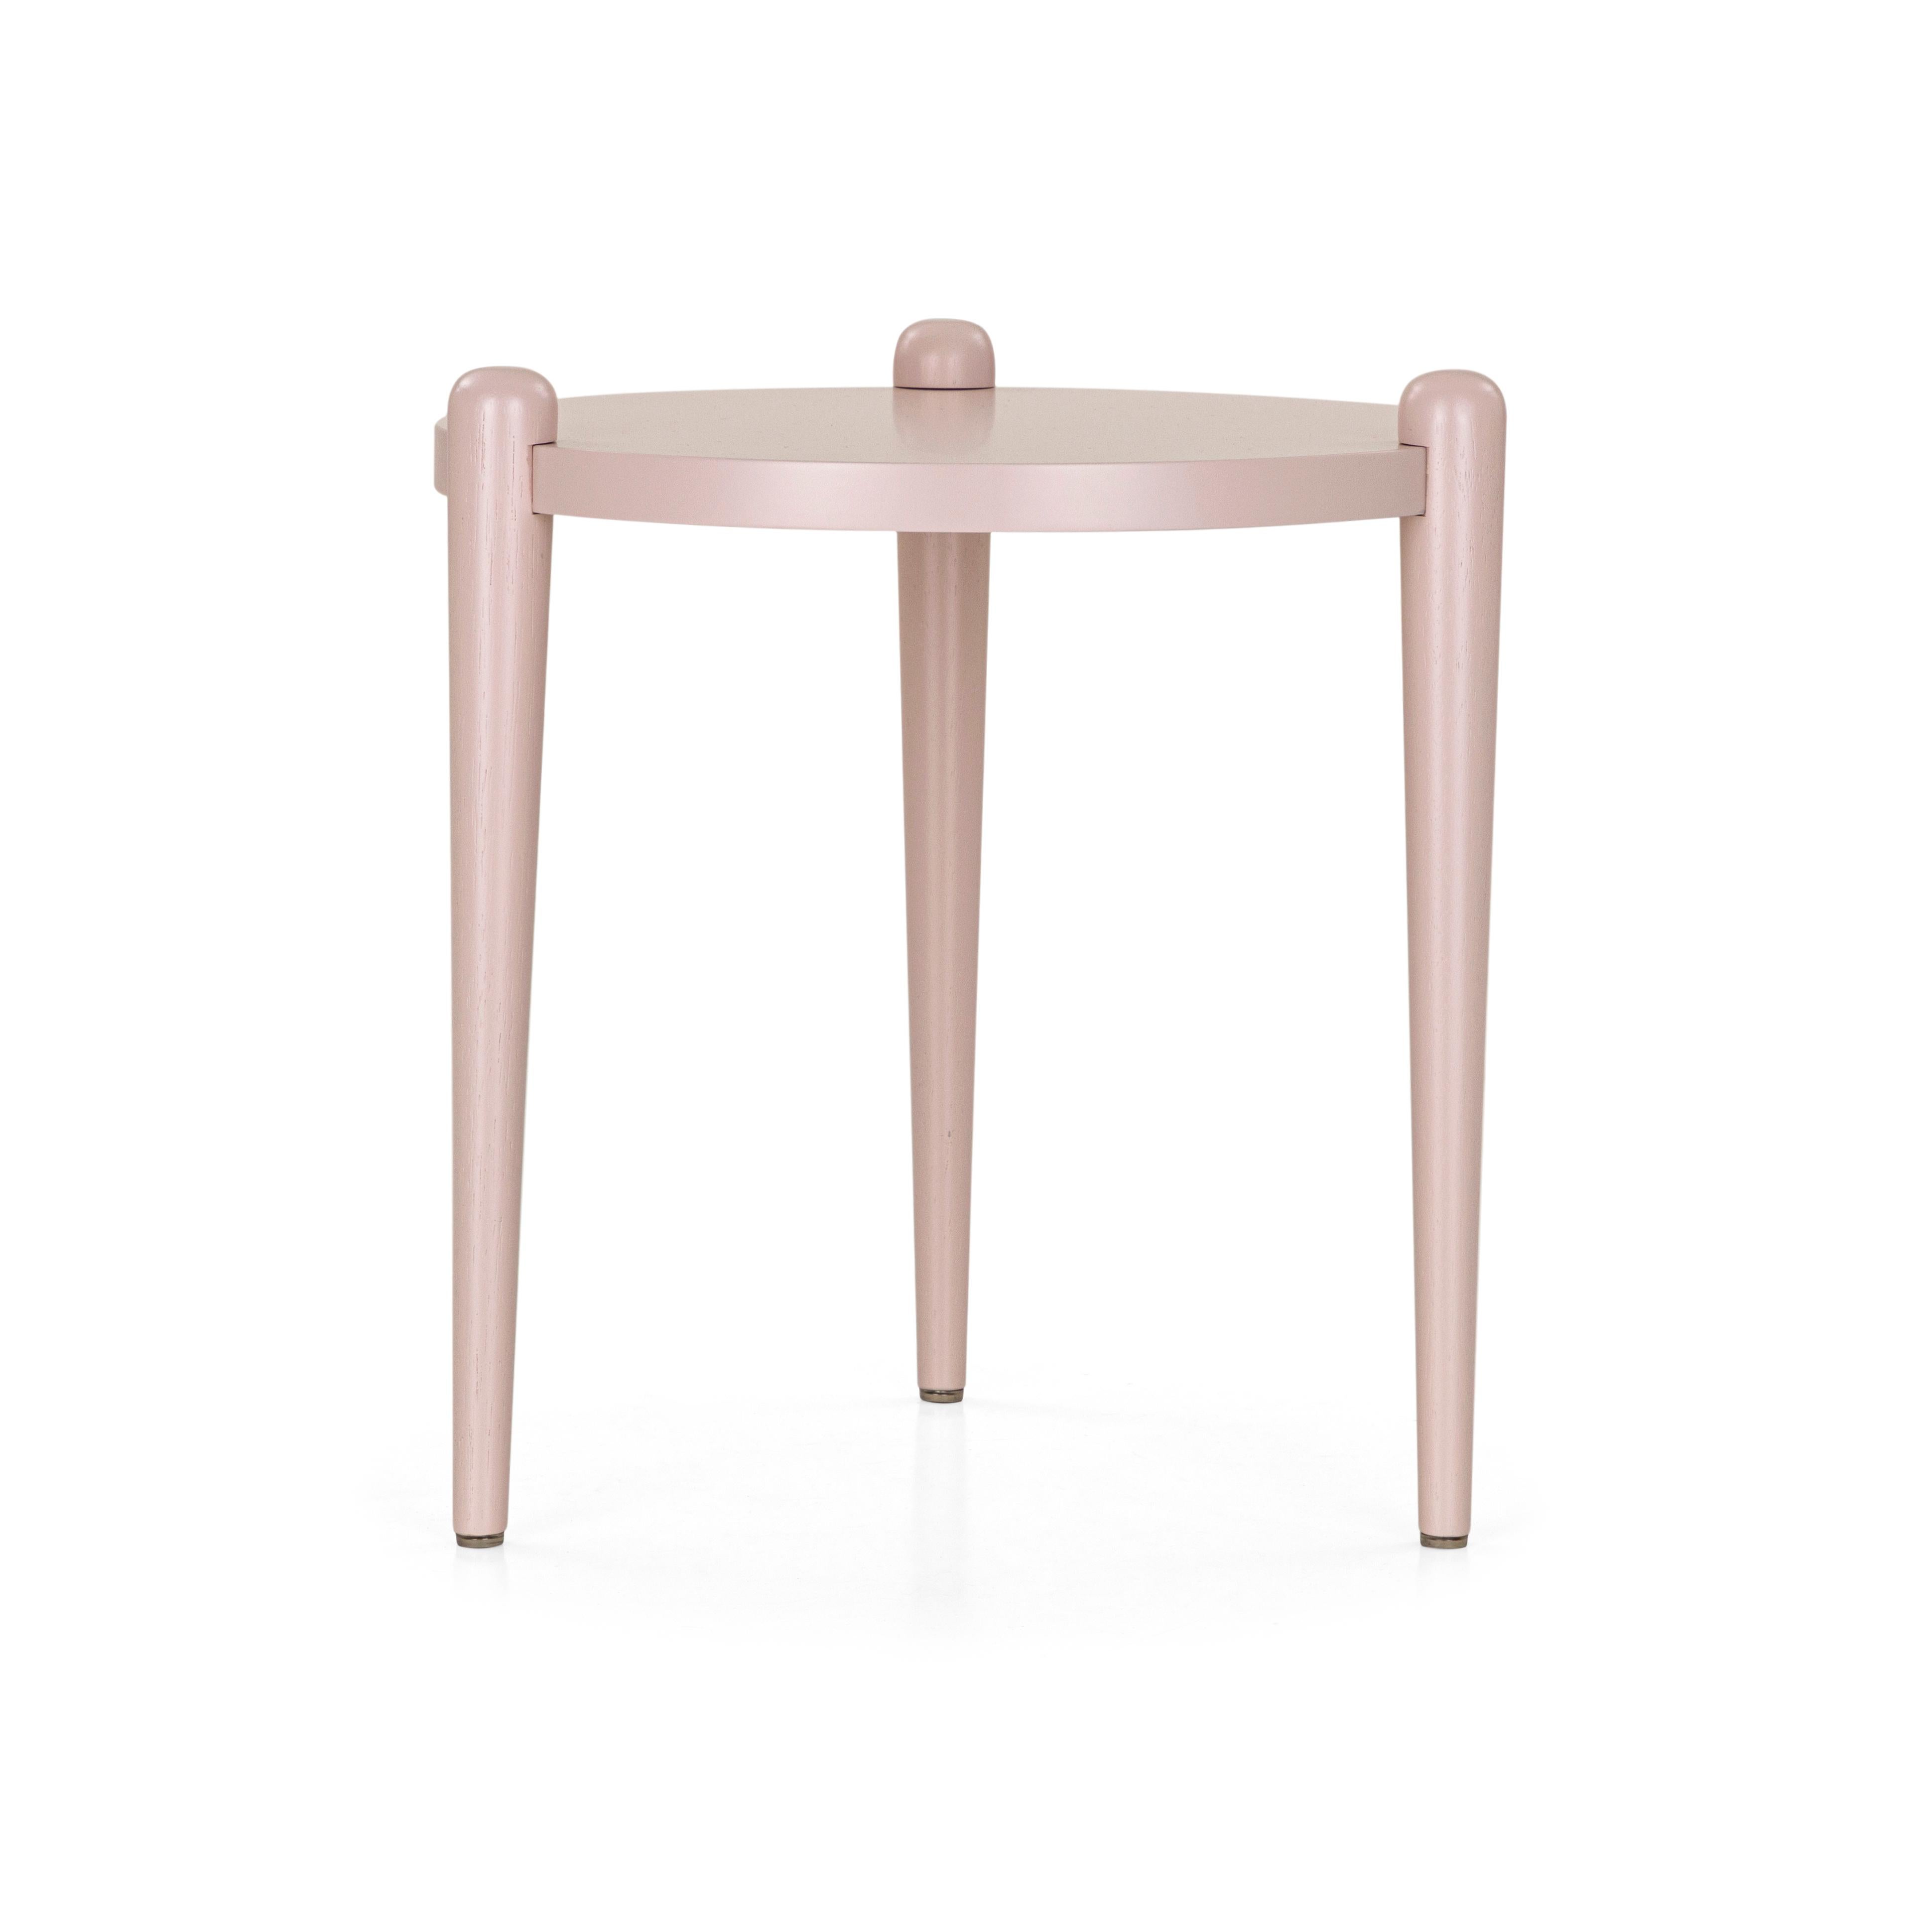 Ce magnifique ensemble créé par notre incroyable équipe de design Uultis Design est un ensemble de trois tables d'appoint en quartz rose clair avec des pieds en forme de cône qui donne une touche rétro offrant un style sophistiqué que vous ne